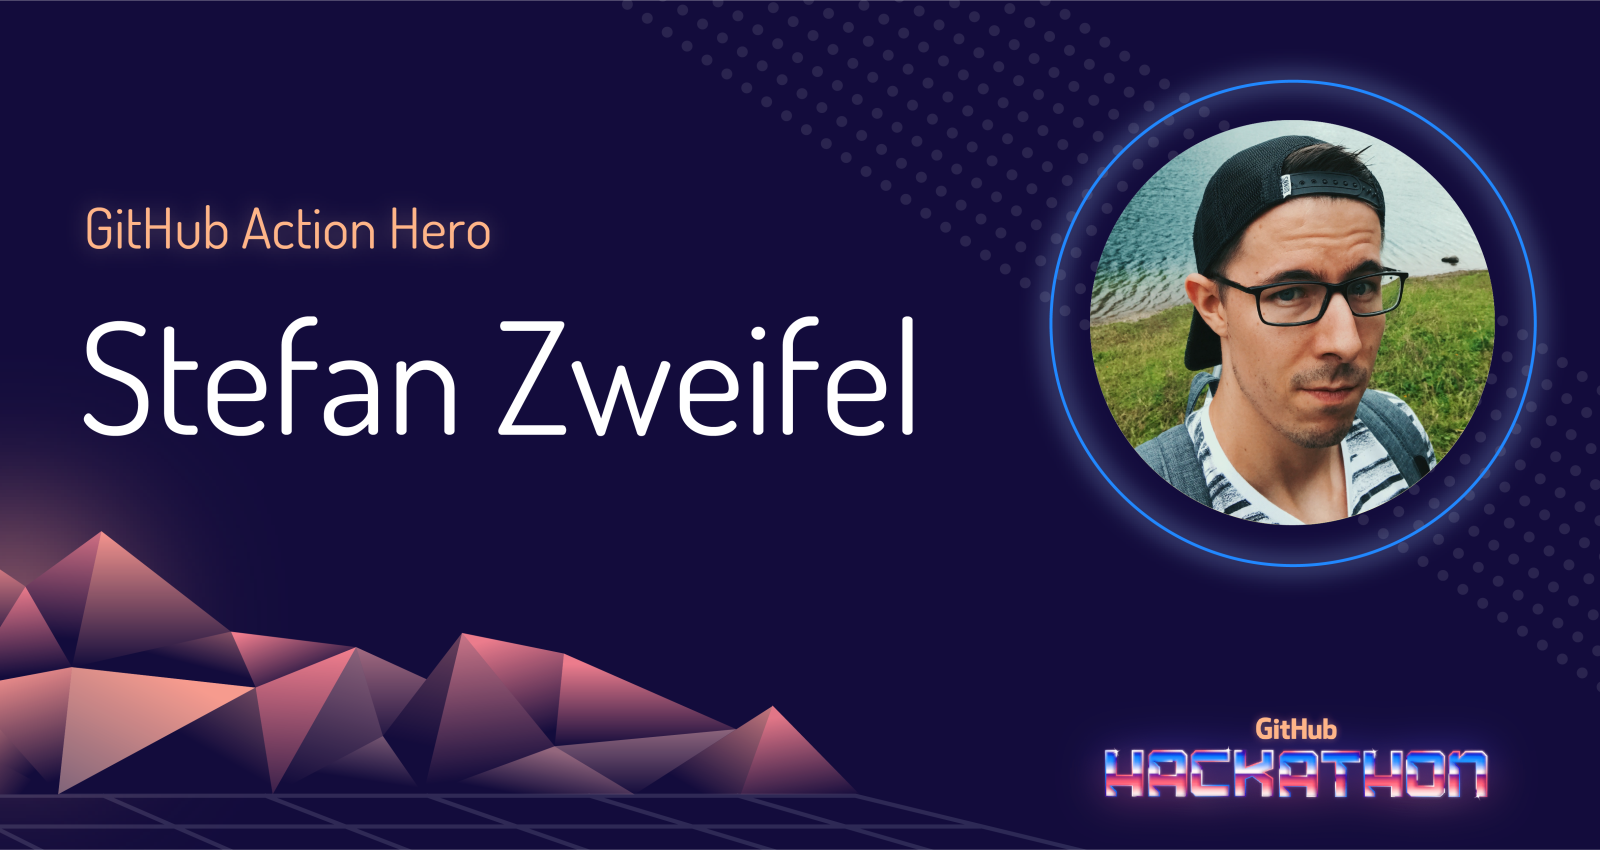 GitHub Action Hero: Stefan Zweifel and “git-auto-commit”